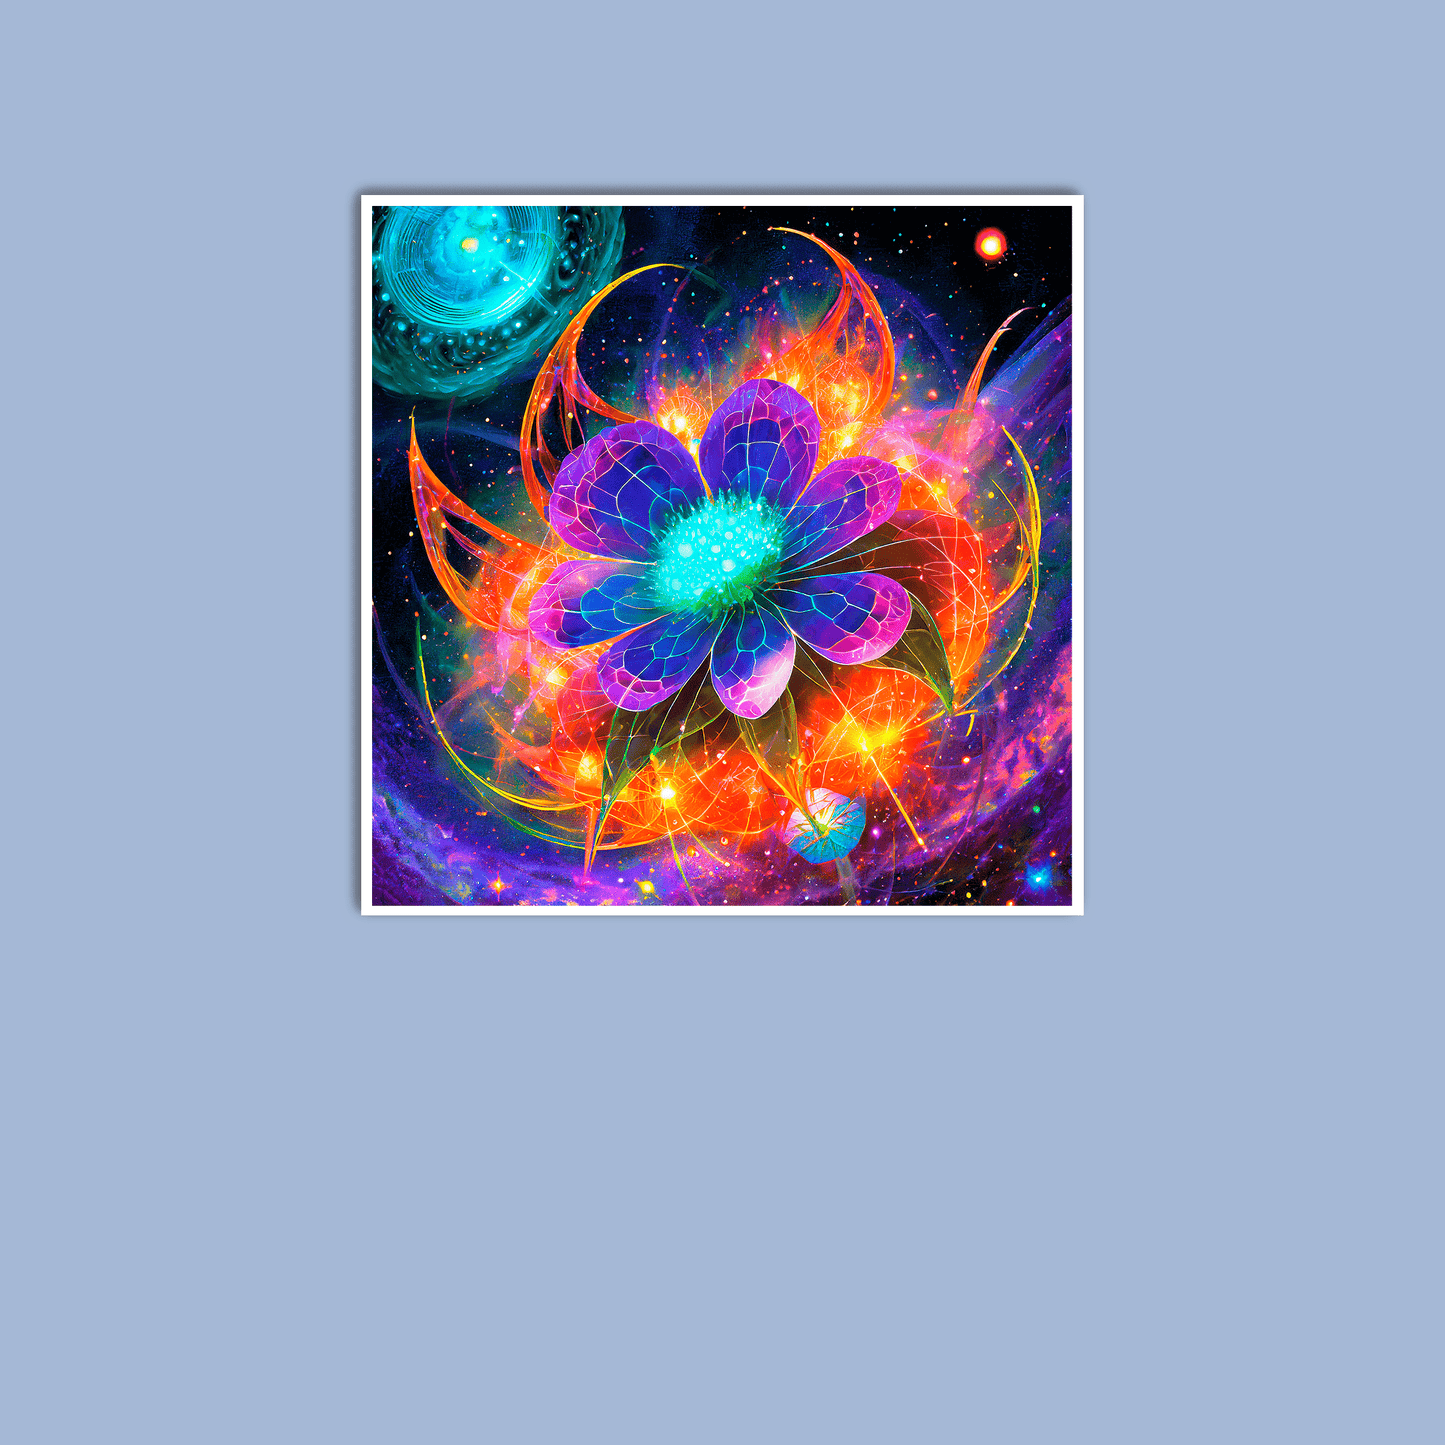 Astral Blossom - Art Print - Unframed - Premium Unframed Art Print